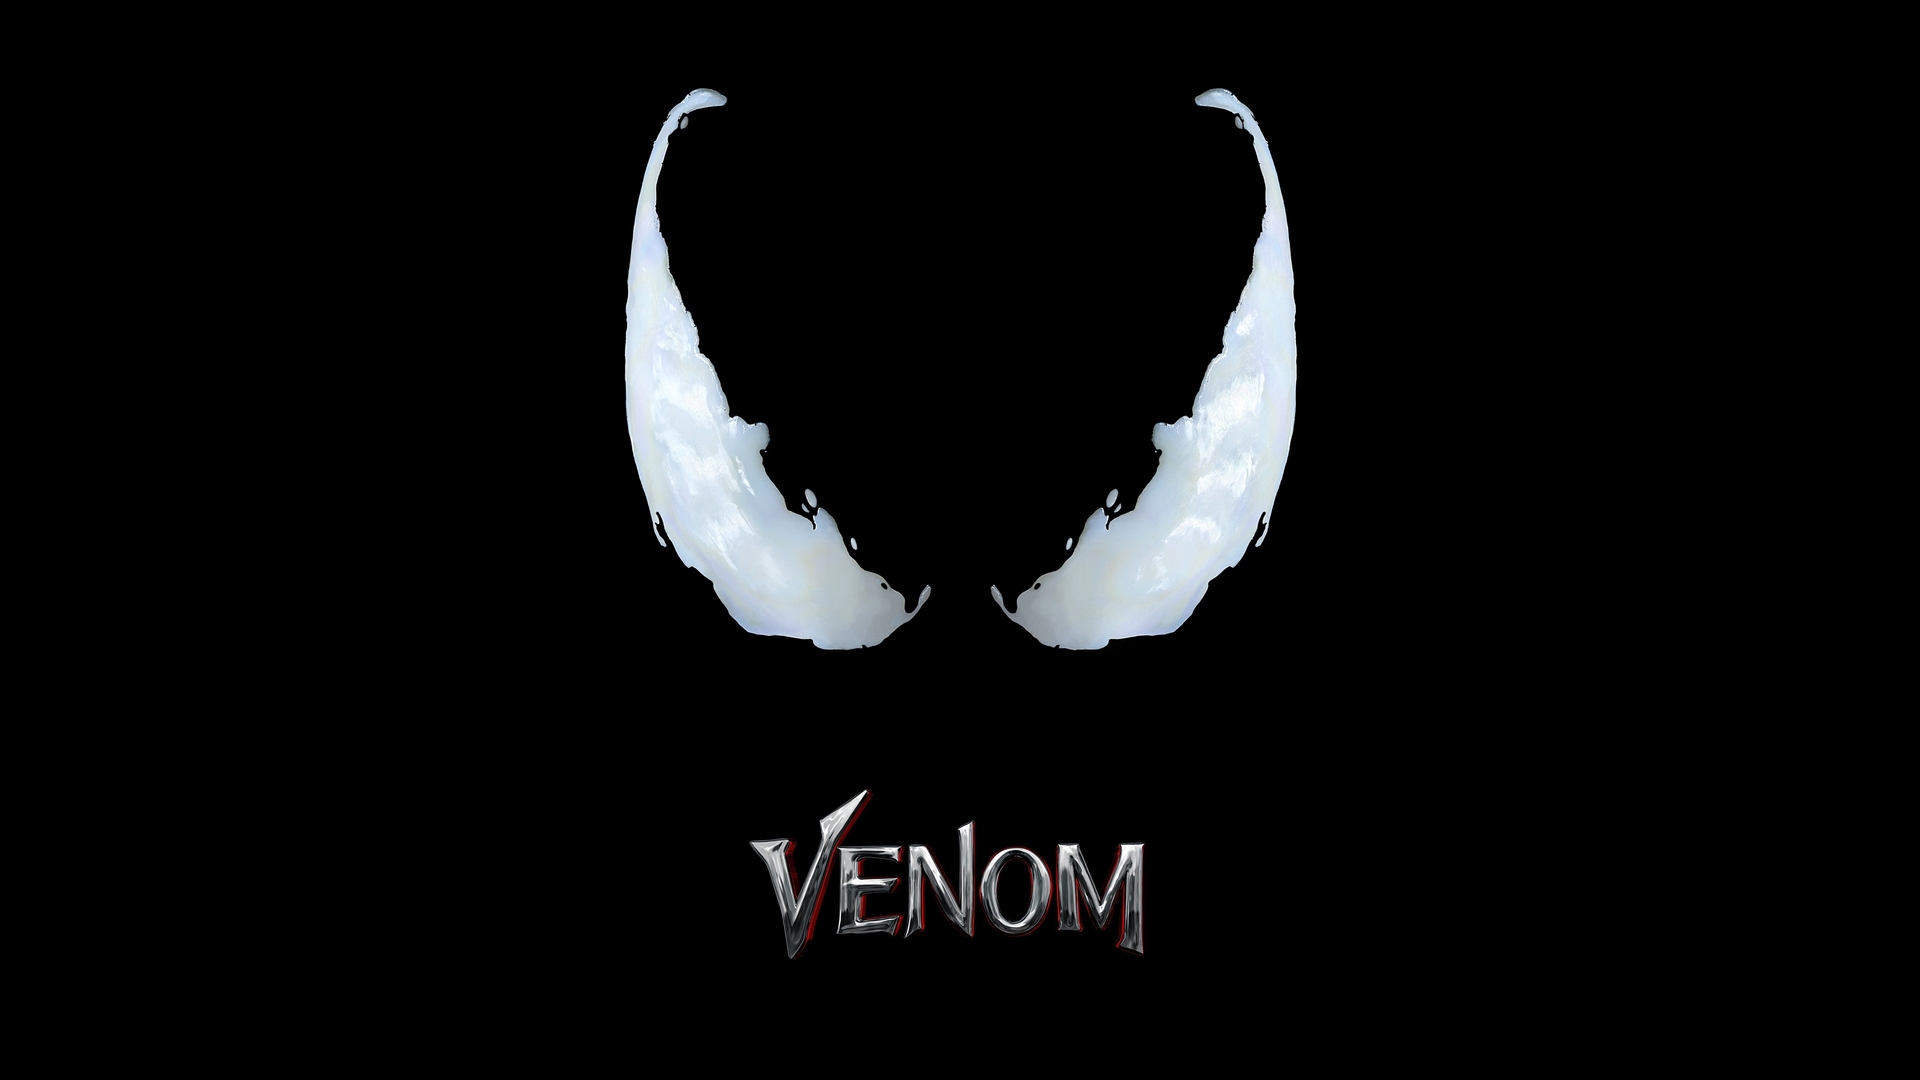 venom movie logo 4k x5 1920x1080